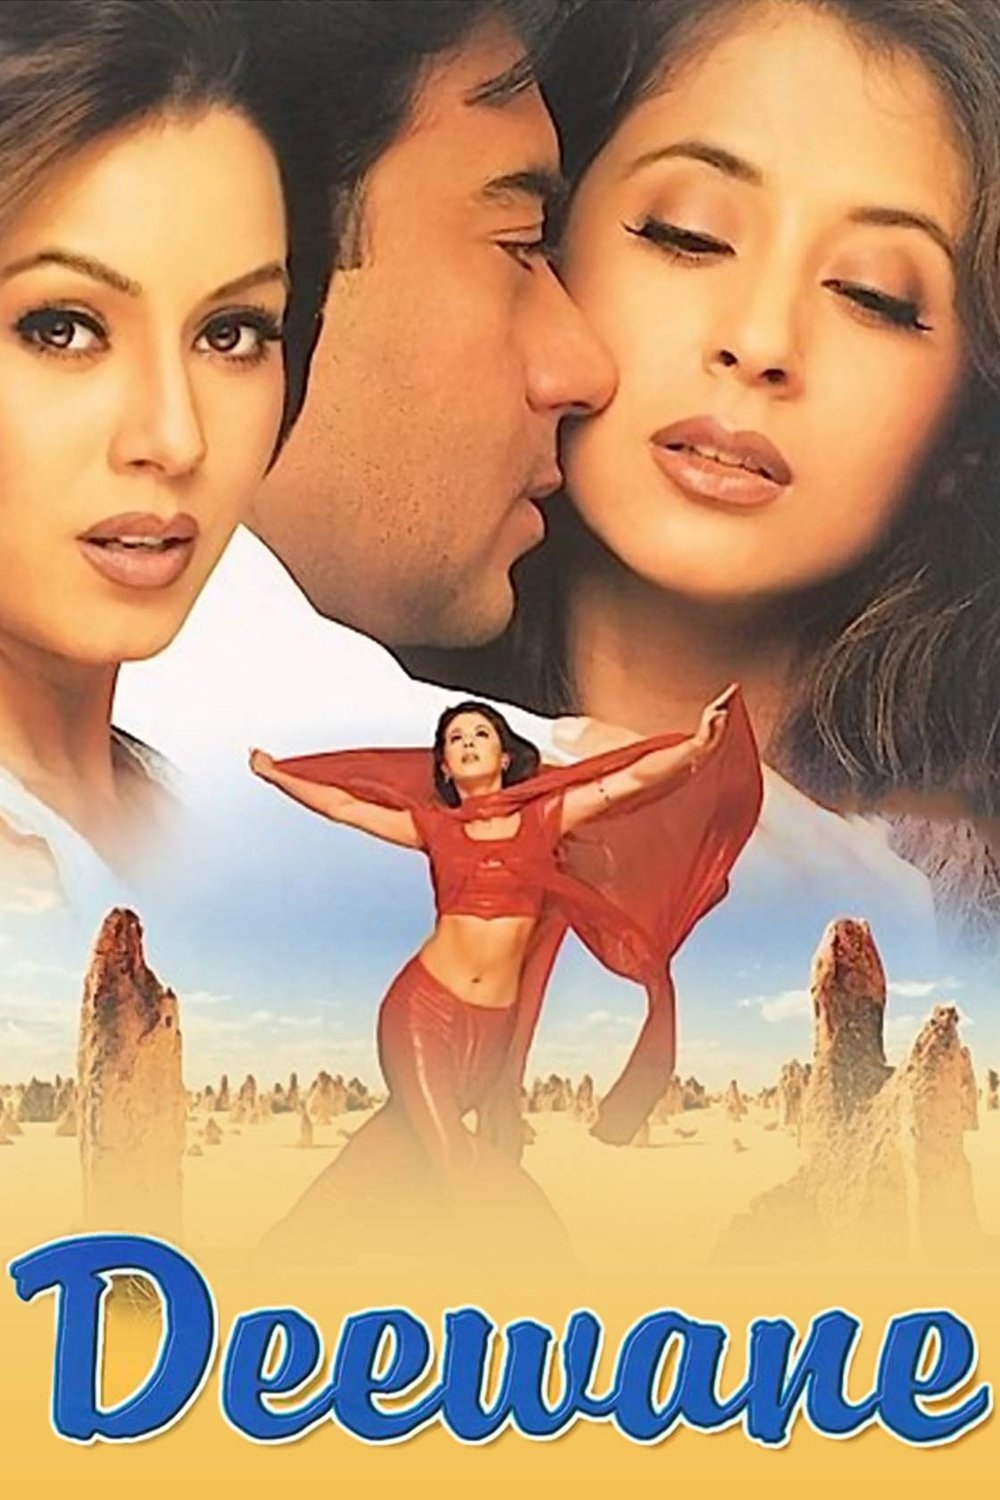 L'affiche originale du film Deewane en Hindi